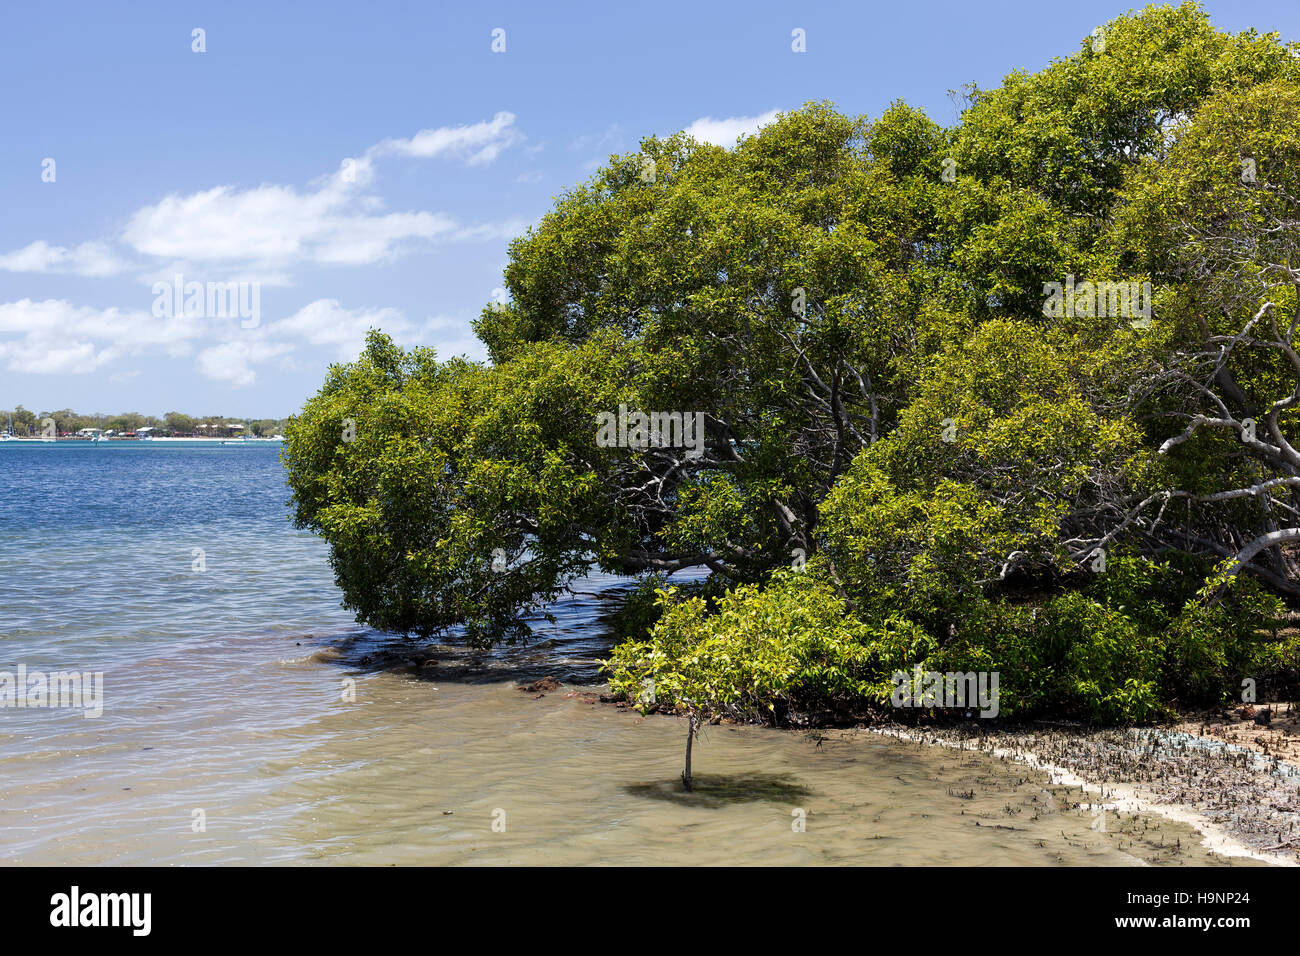 Mangrovie sono tolleranti di sale di arbusti o piccoli alberi, chiamato anche halophytes, che crescono nelle zone costiere di soluzione salina o acqua salmastra dell'Australia tropicale Foto Stock